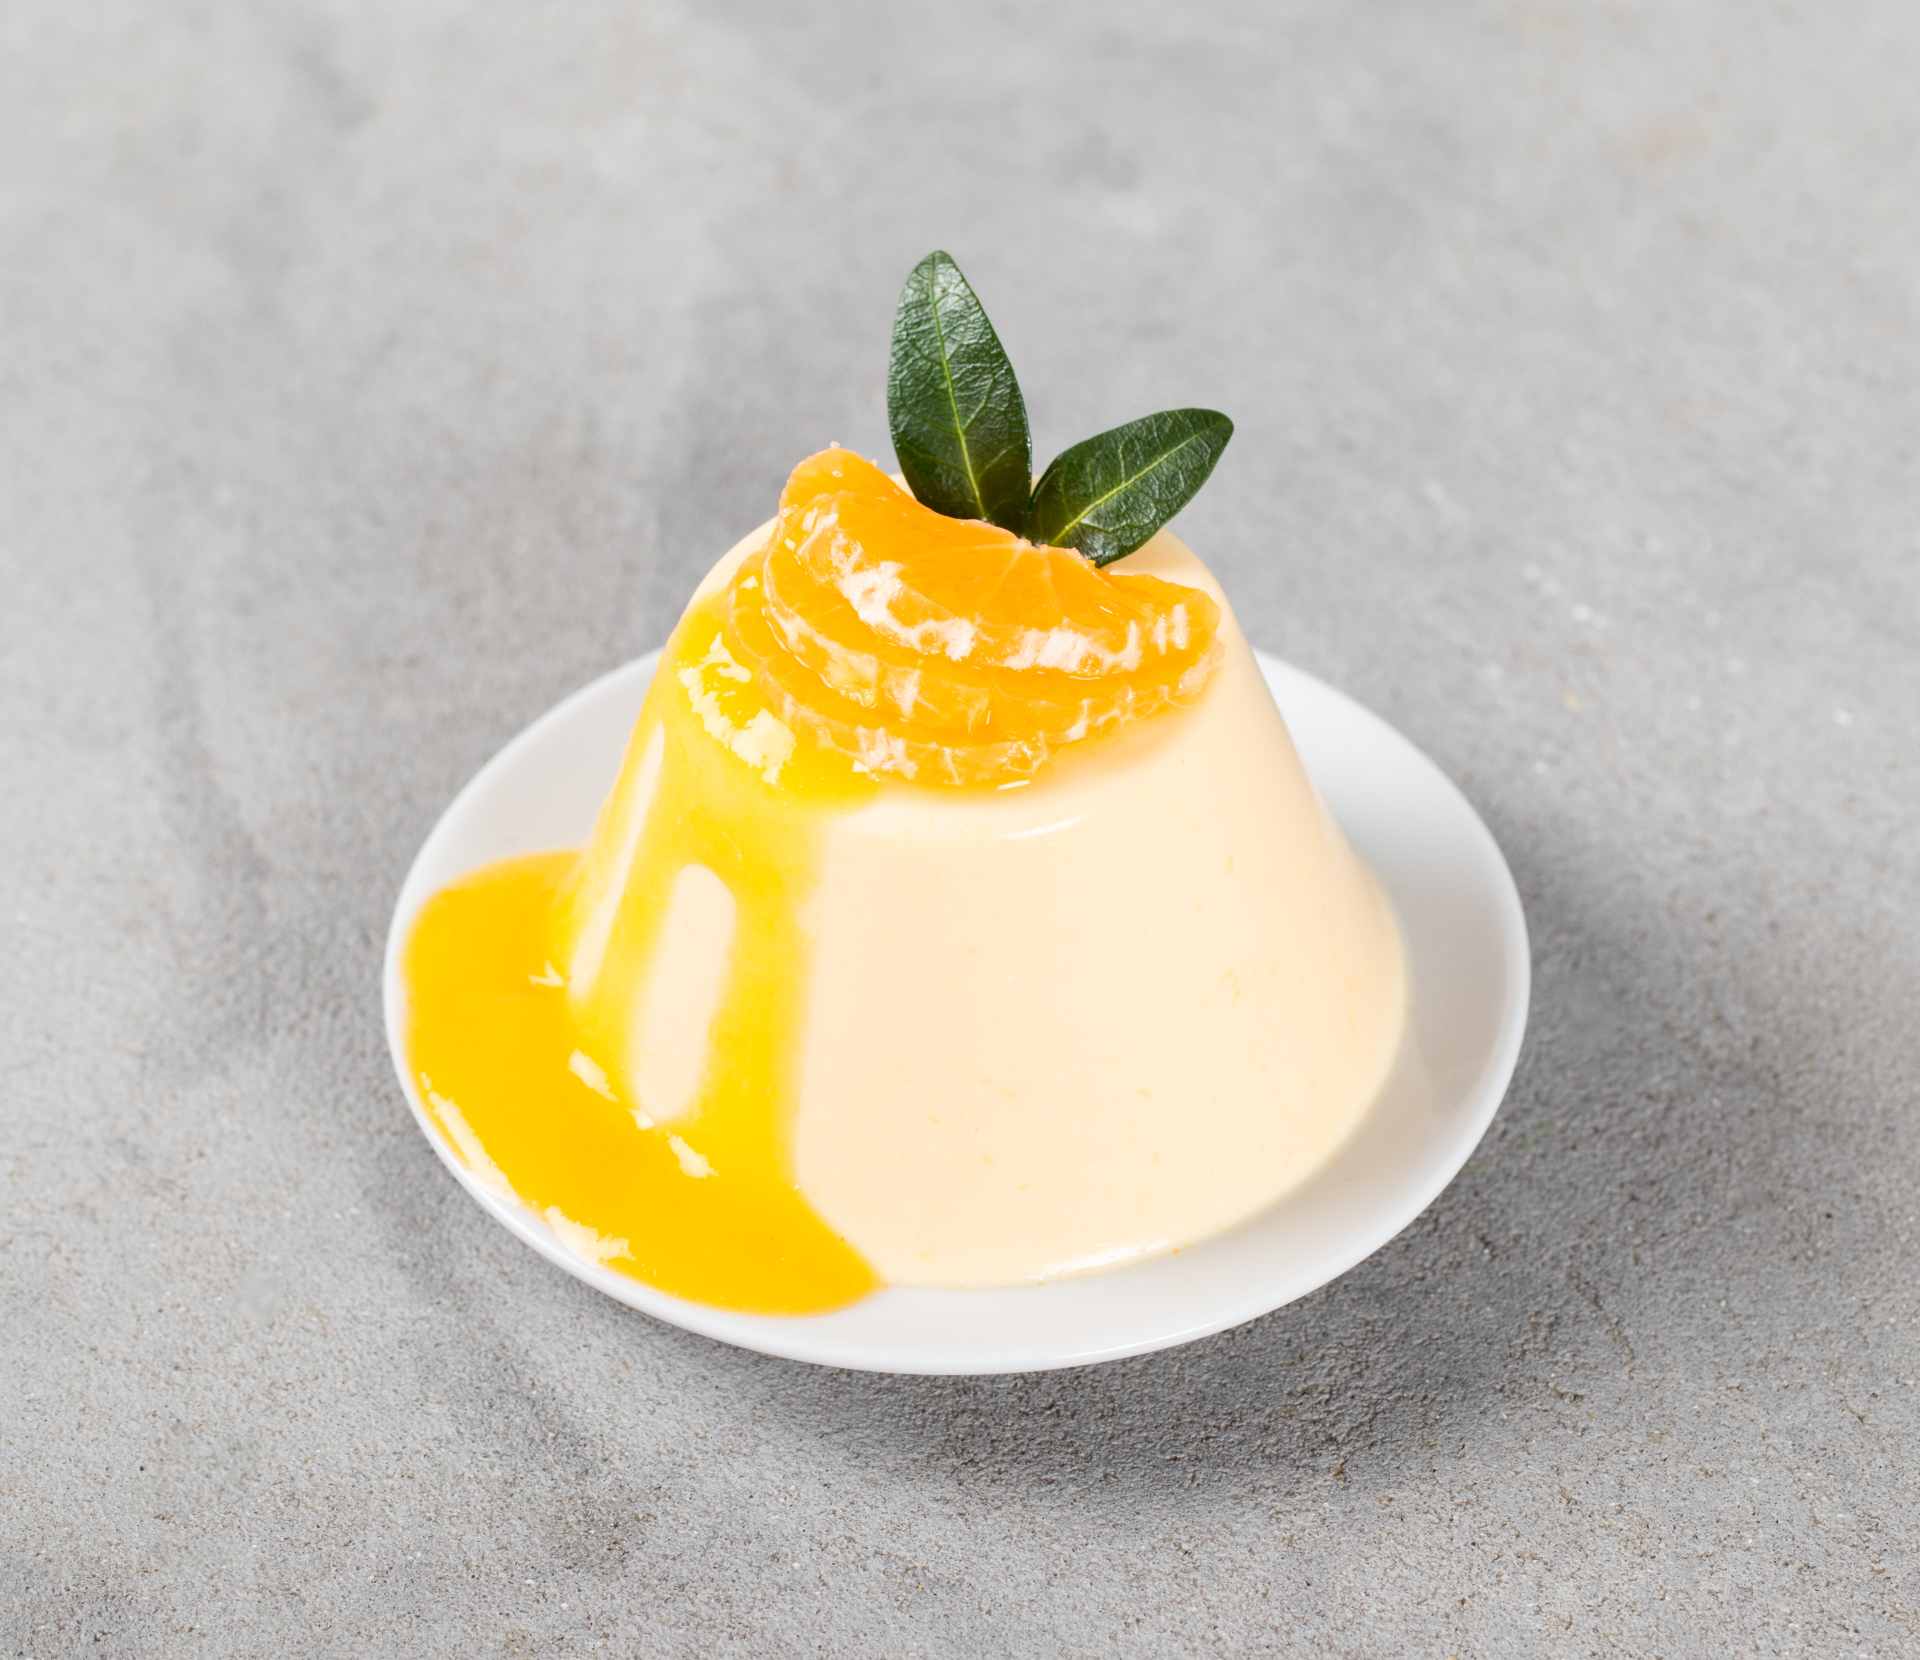 Gelatina de iogurte com calda de laranja e crocante